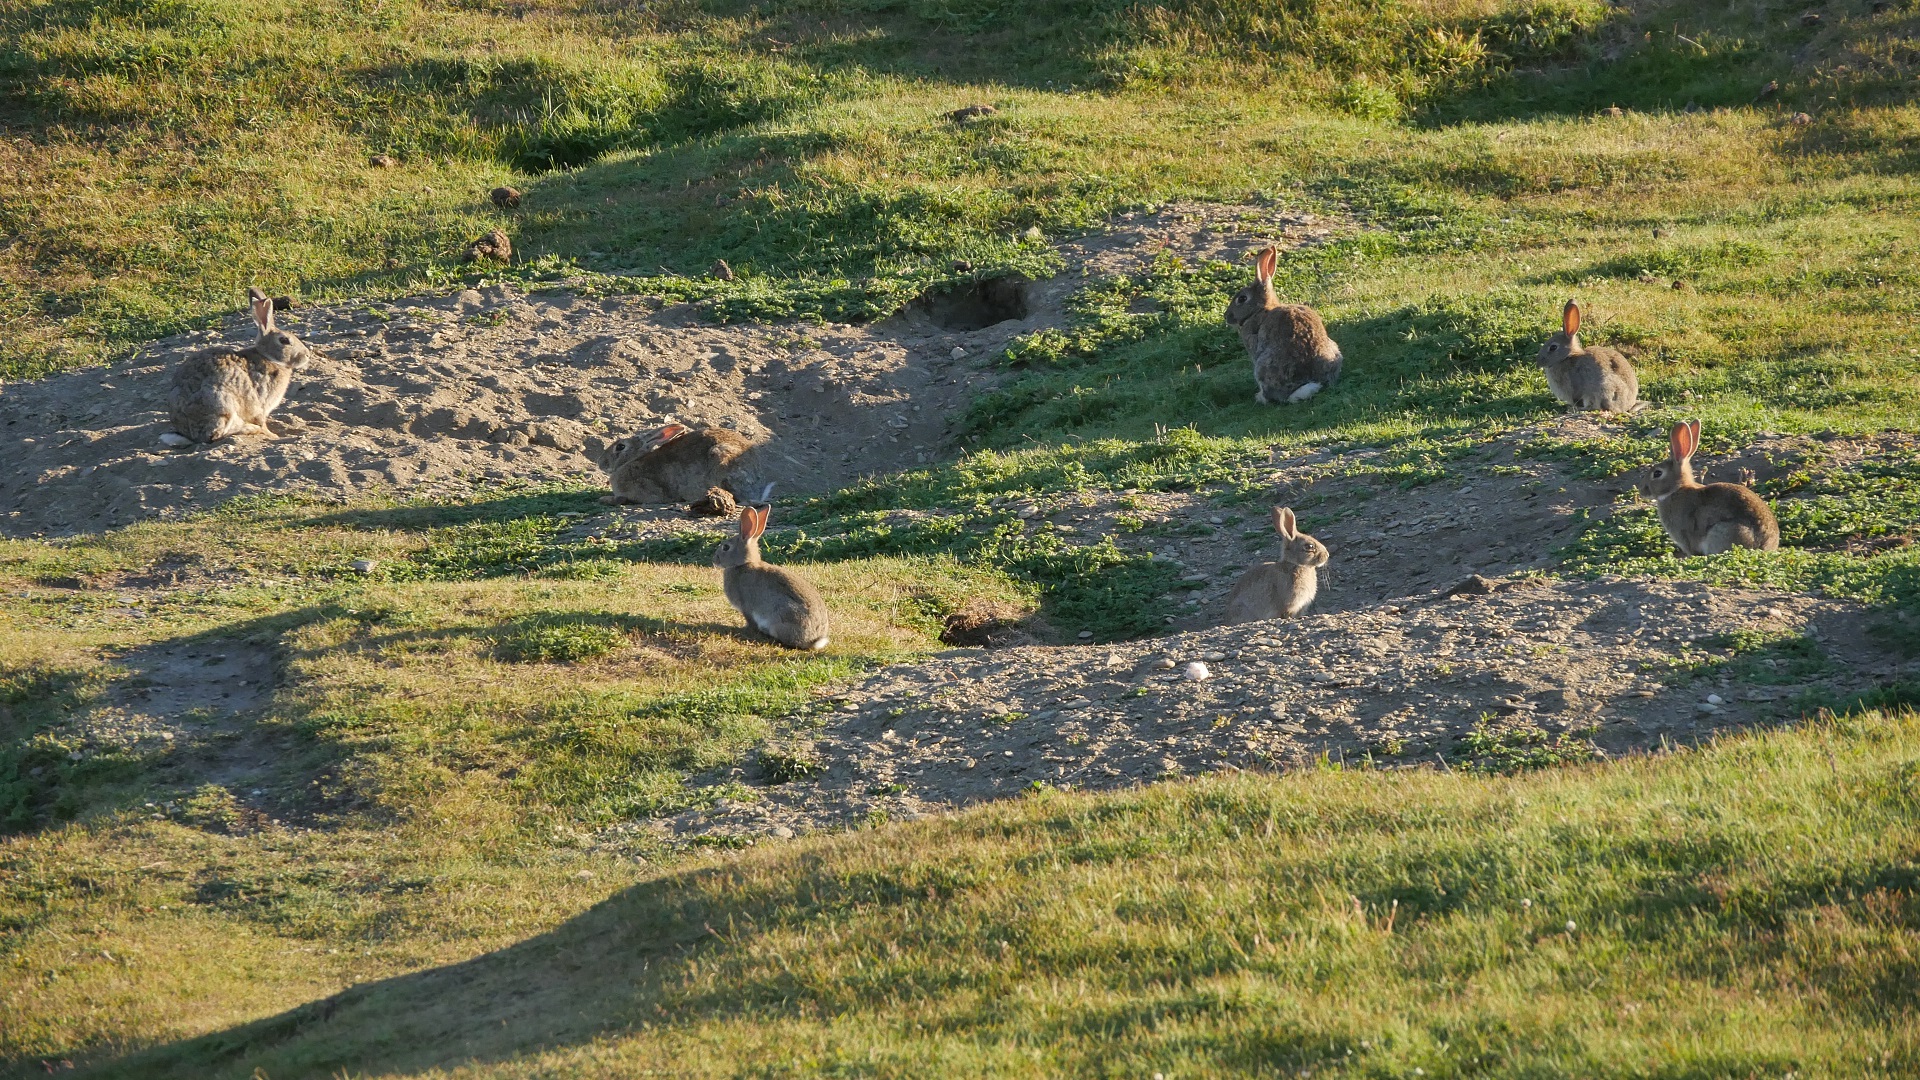 Kaninchen in der Abendsonne vor ihrem ausgedehnten Bau. Sie stutzen die überall an gestörten Stellen vorkommenden europäischen Wiesenarten zu einem englischen Rasen.